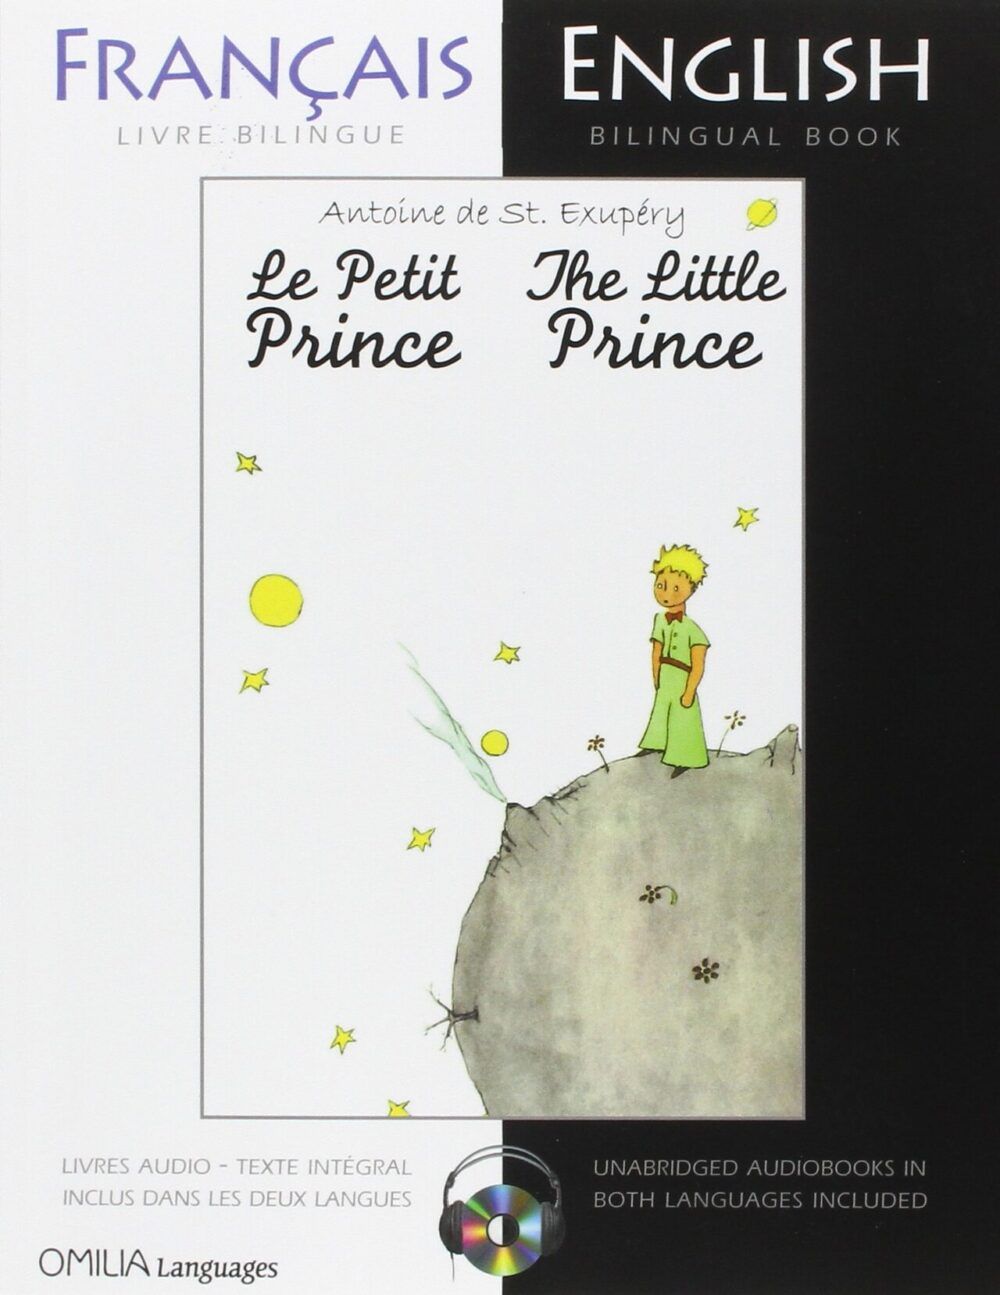 The Little Prince song ngu e1581529184345 - Hoàng tử bé – Lăng kính vạn hoa kì diệu của tuổi thơ